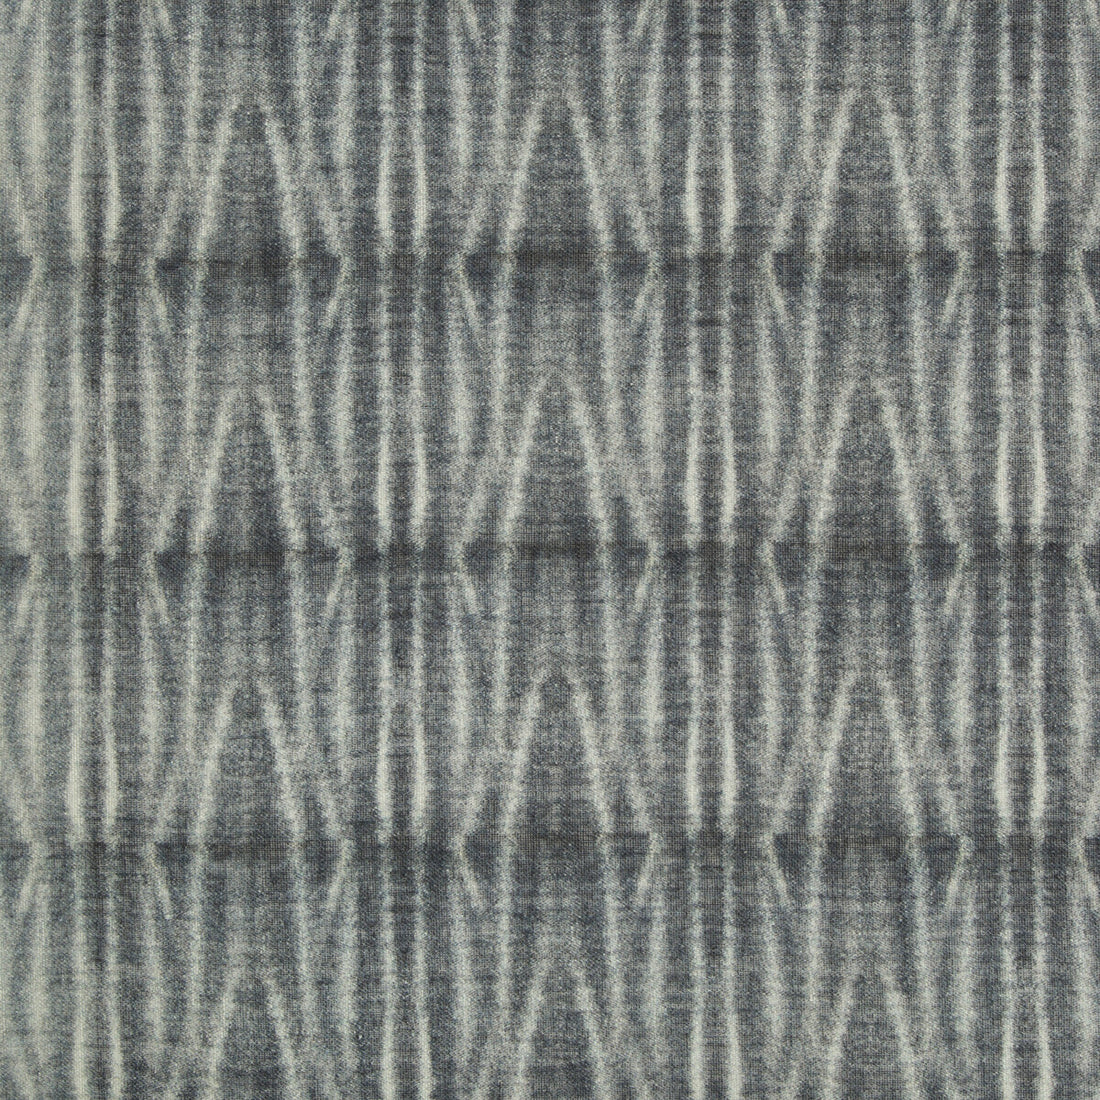 Kravet Design fabric in 4588-511 color - pattern 4588.511.0 - by Kravet Design